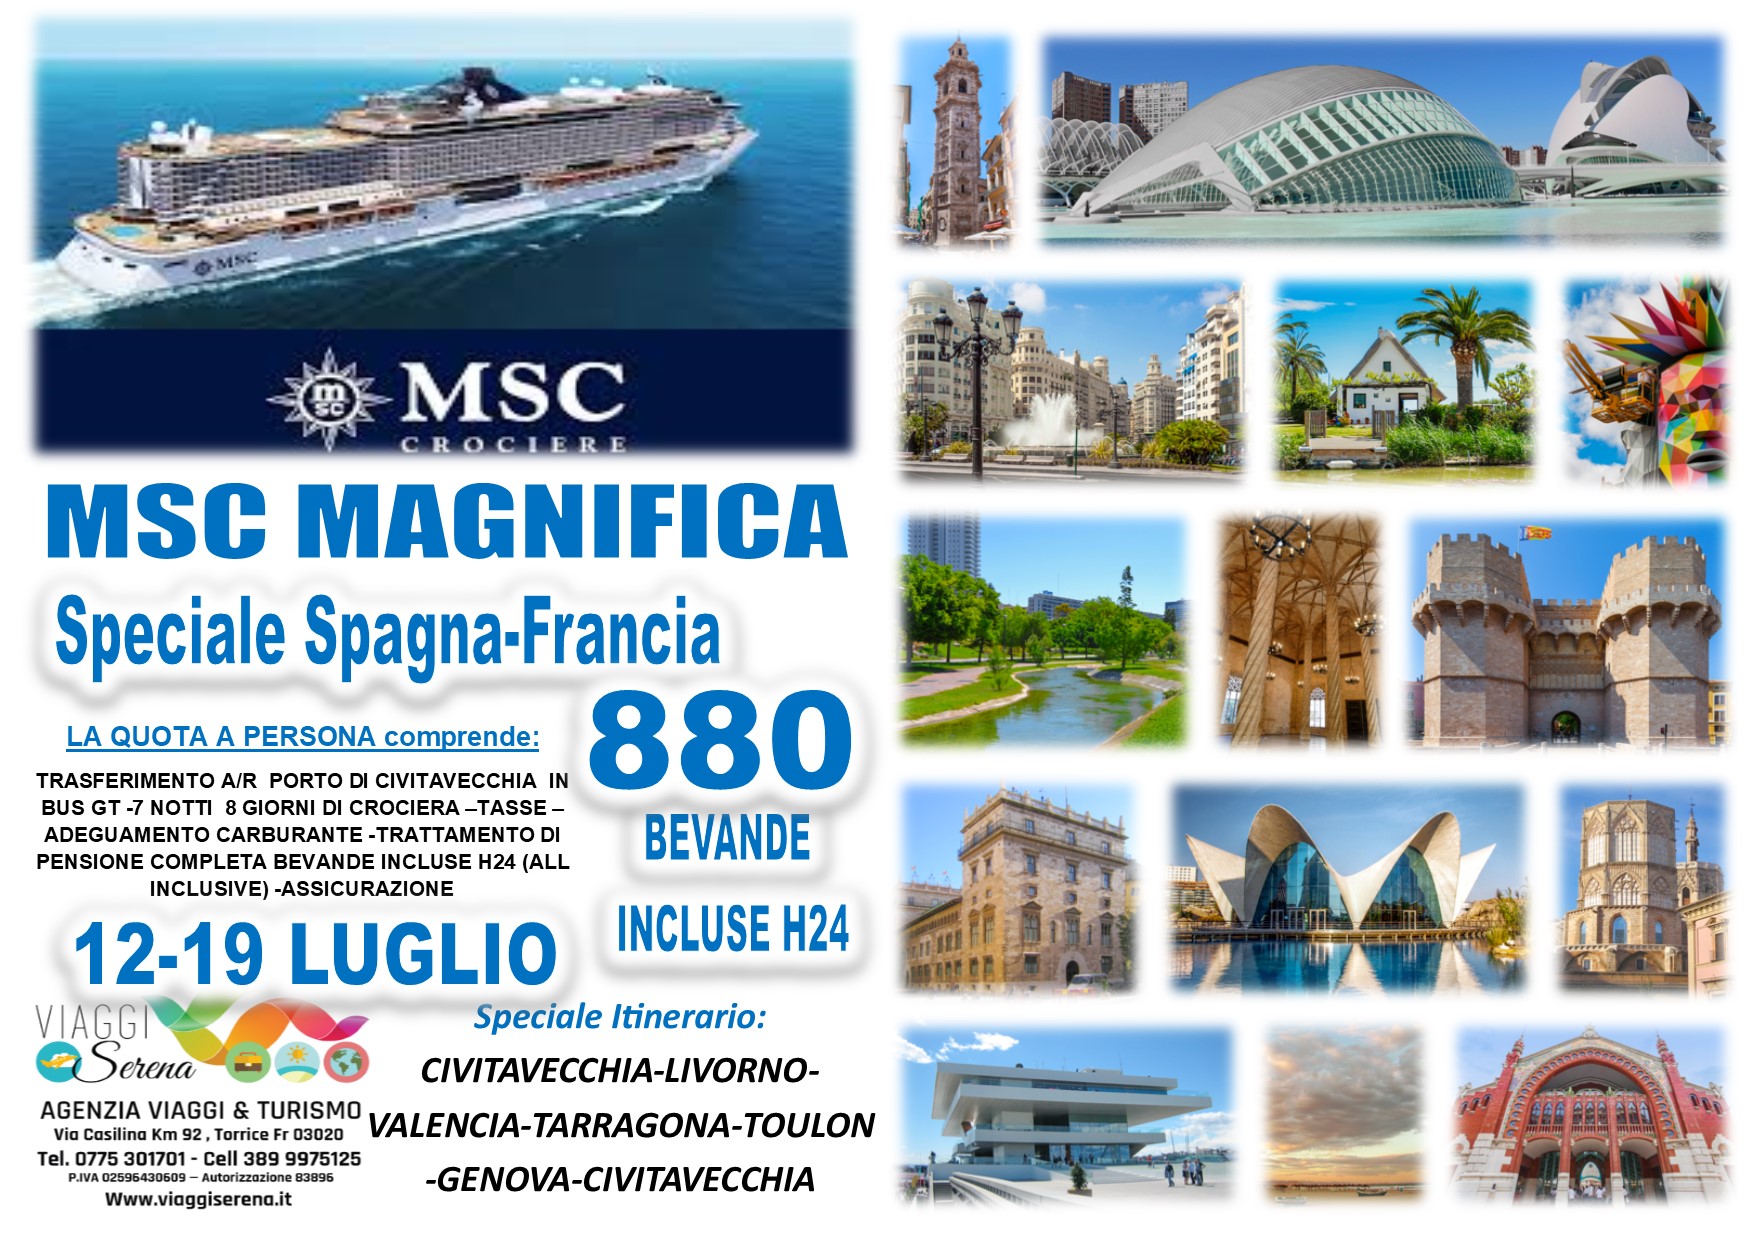 Viaggi di Gruppo: Crociera “Msc Magnifica” Spagna e Francia 12-19 Luglio € 880,00